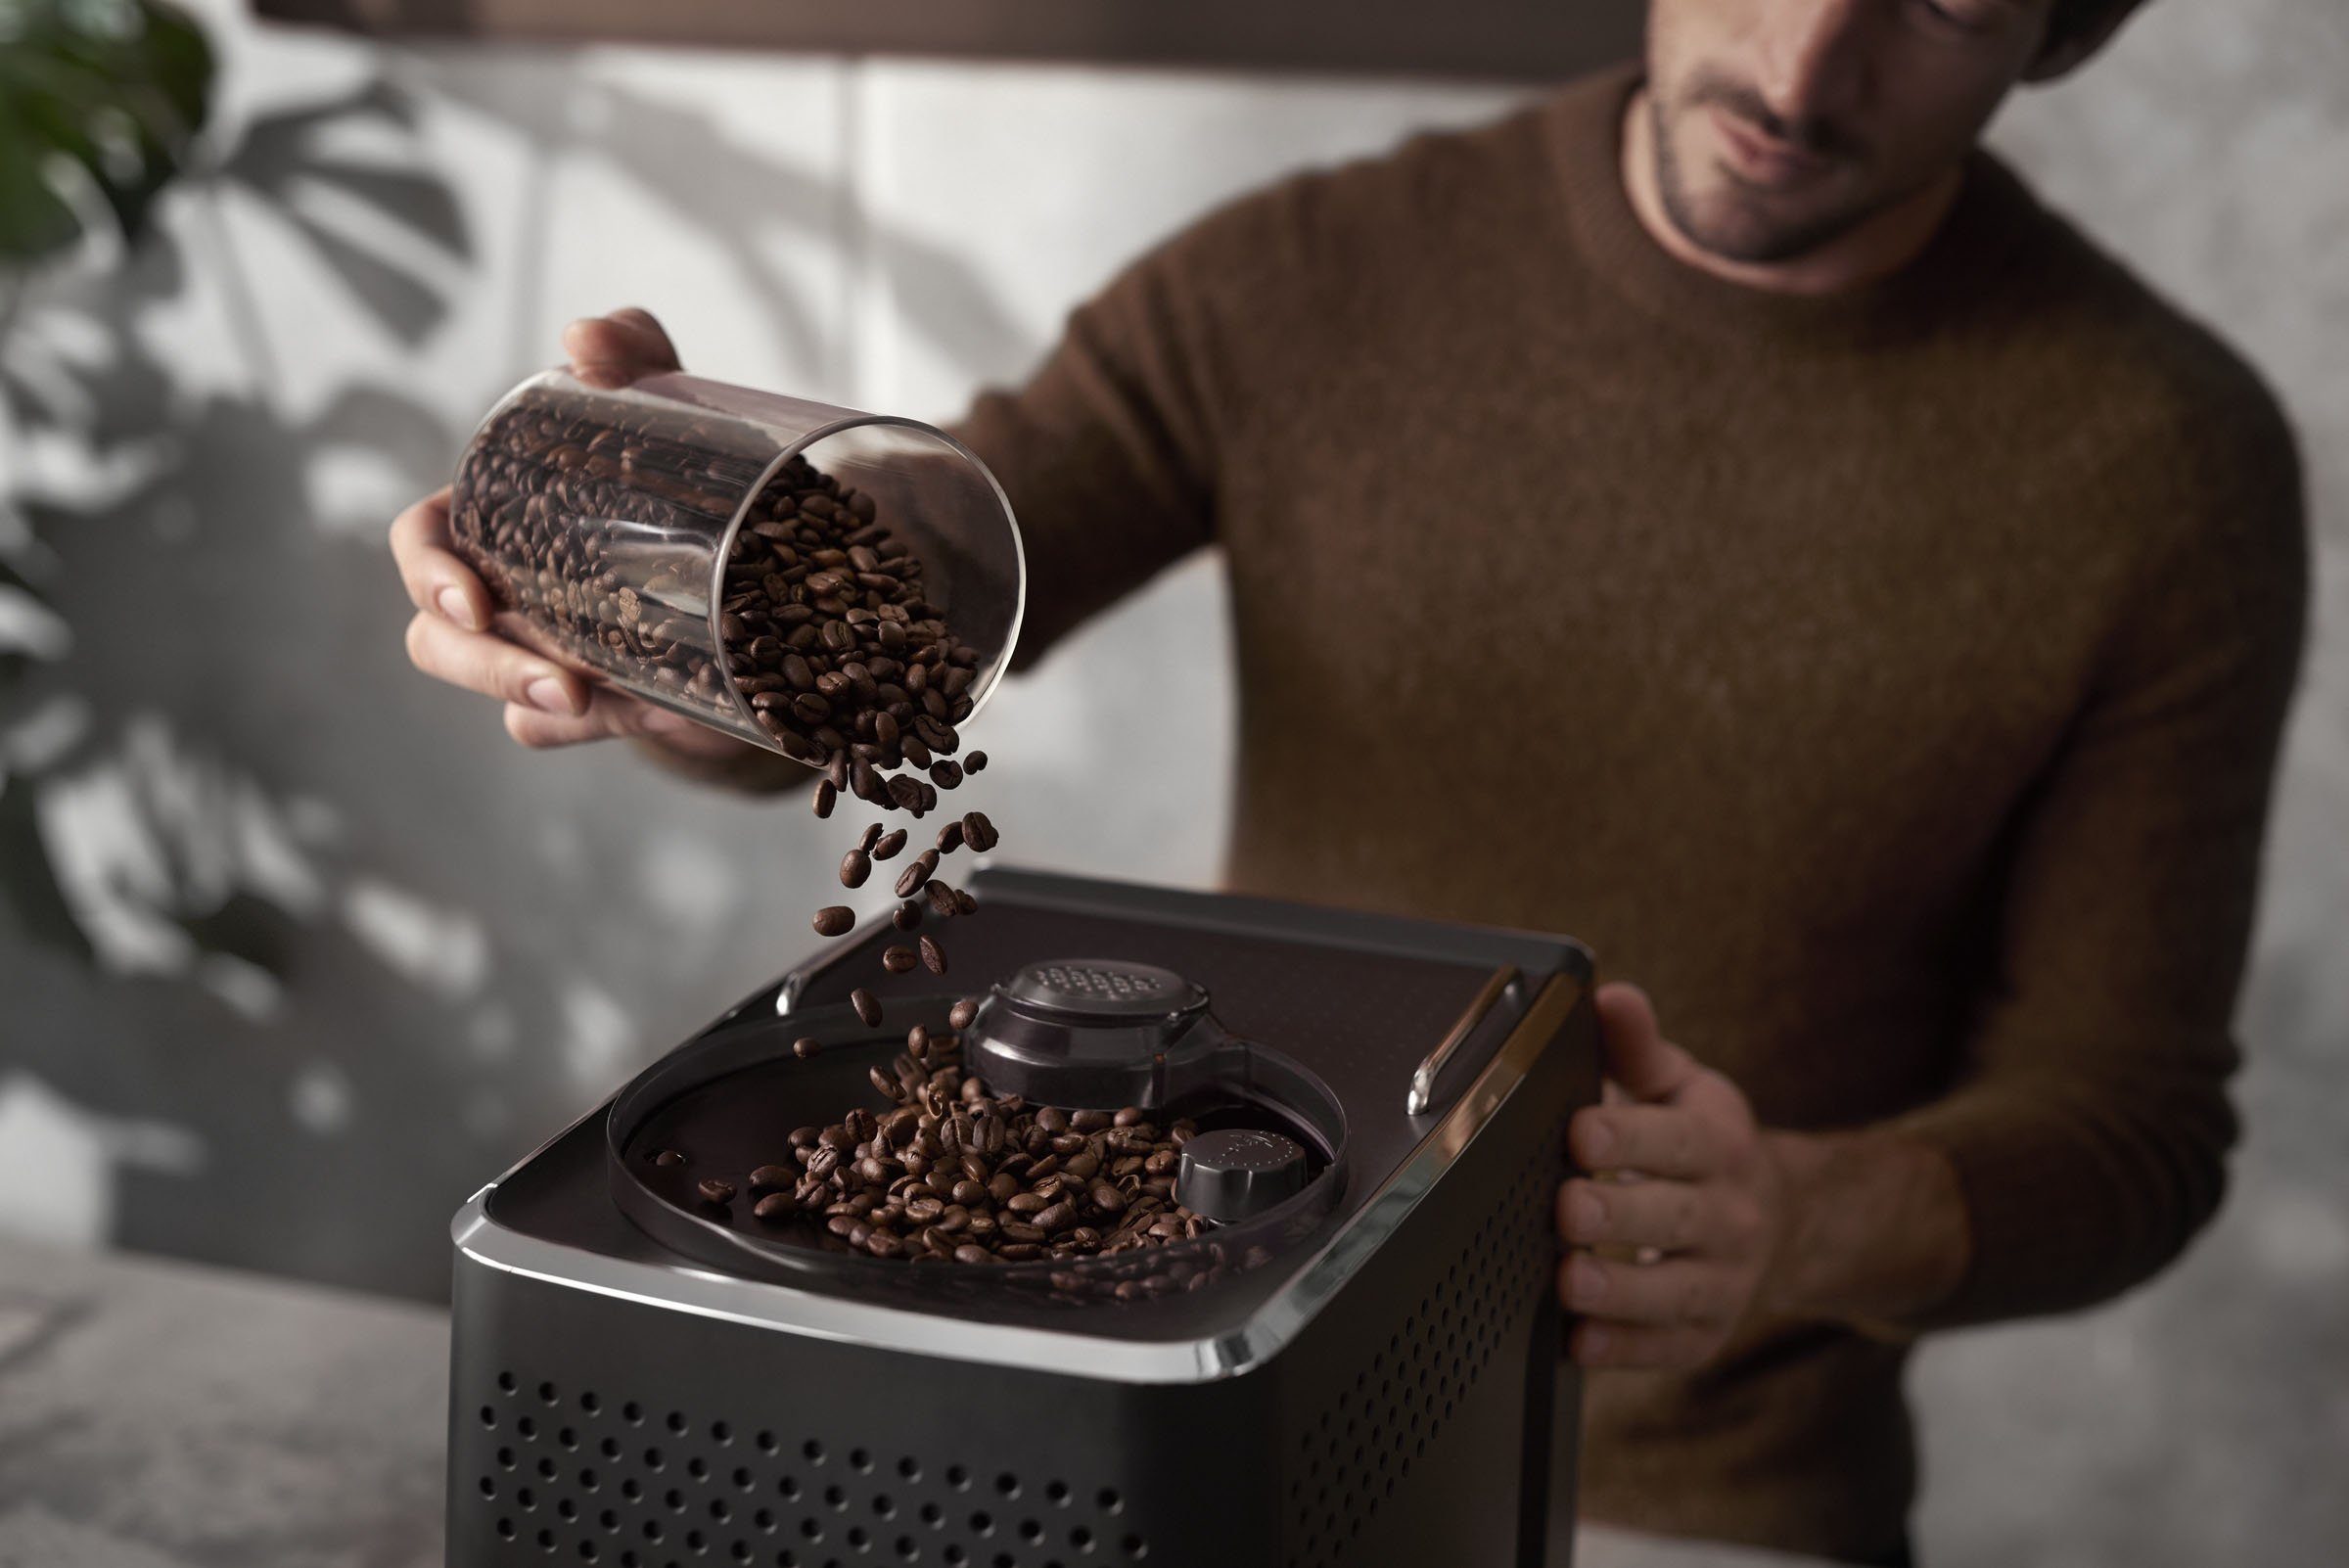 Kaffeespezialitäten GranAroma CoffeeMaestro, Saeco individuelle Personalisierung: SM6585/00, 16 Kaffeevollautomat